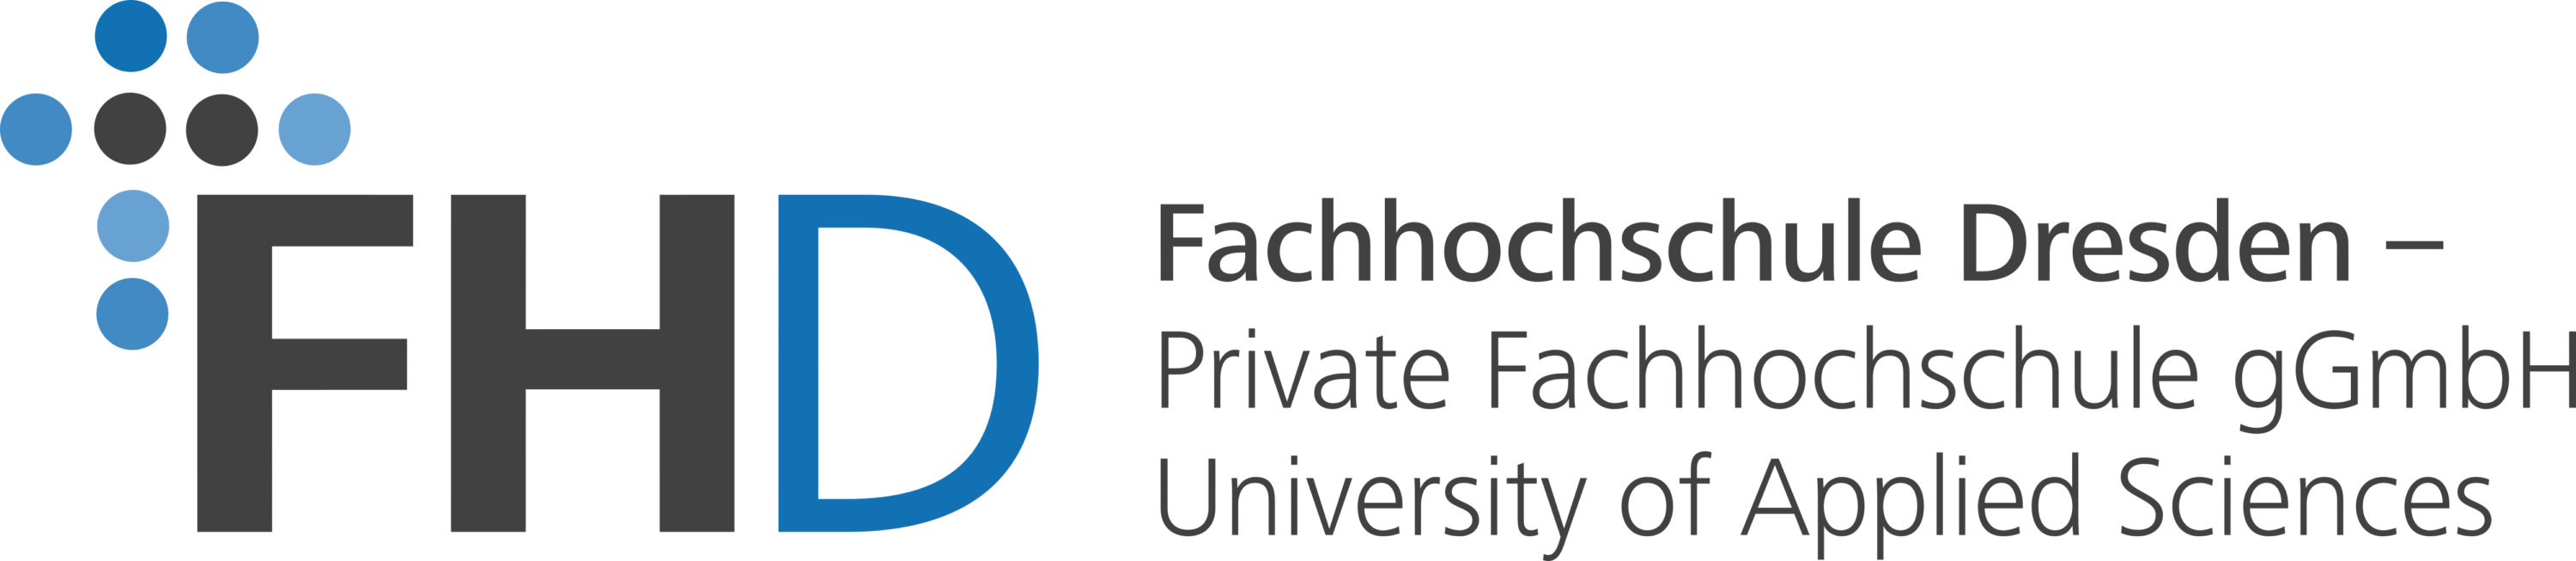 FHD Fachhochschule Dresden Logo